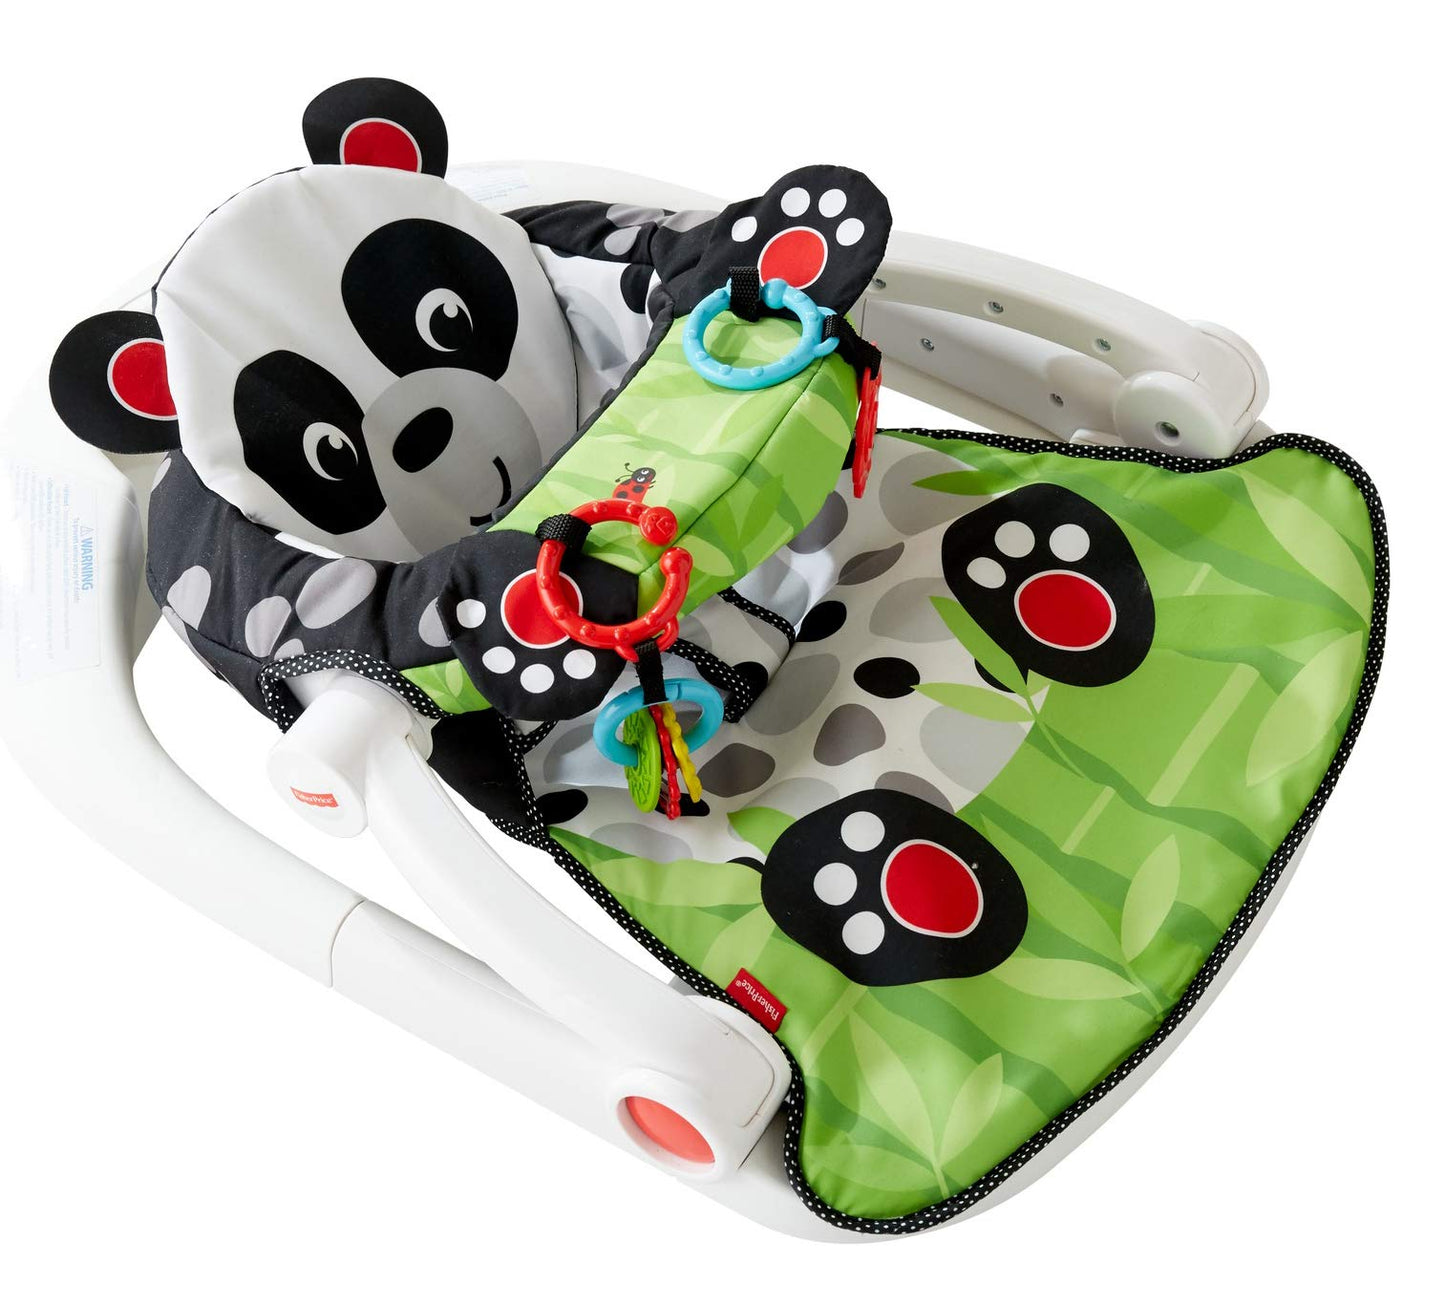 Fisher-Price Sit-Me-Up Floor Seat - Panda